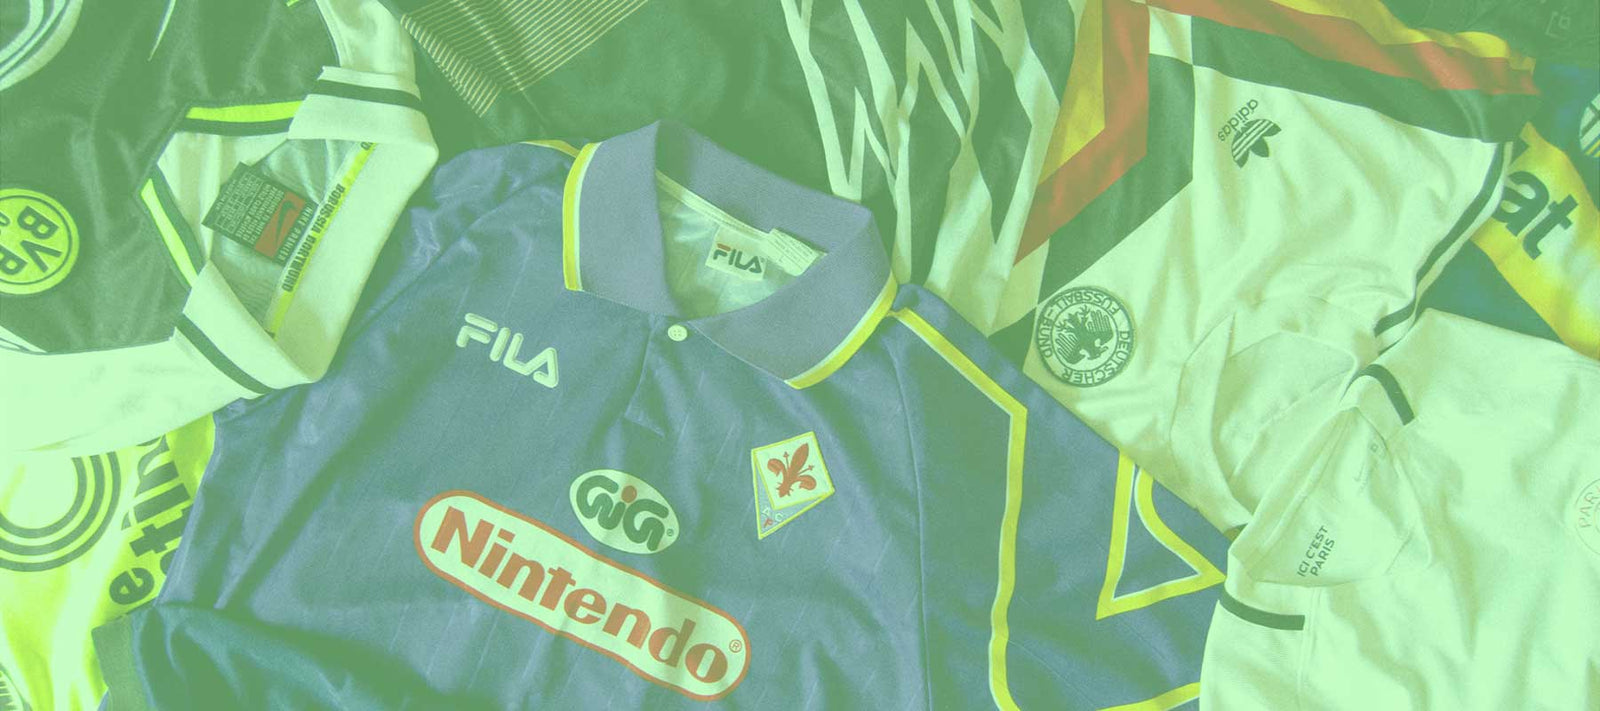 Retro Mexico Football Shirts & Kits for Sale - Vintage Sports Fashion